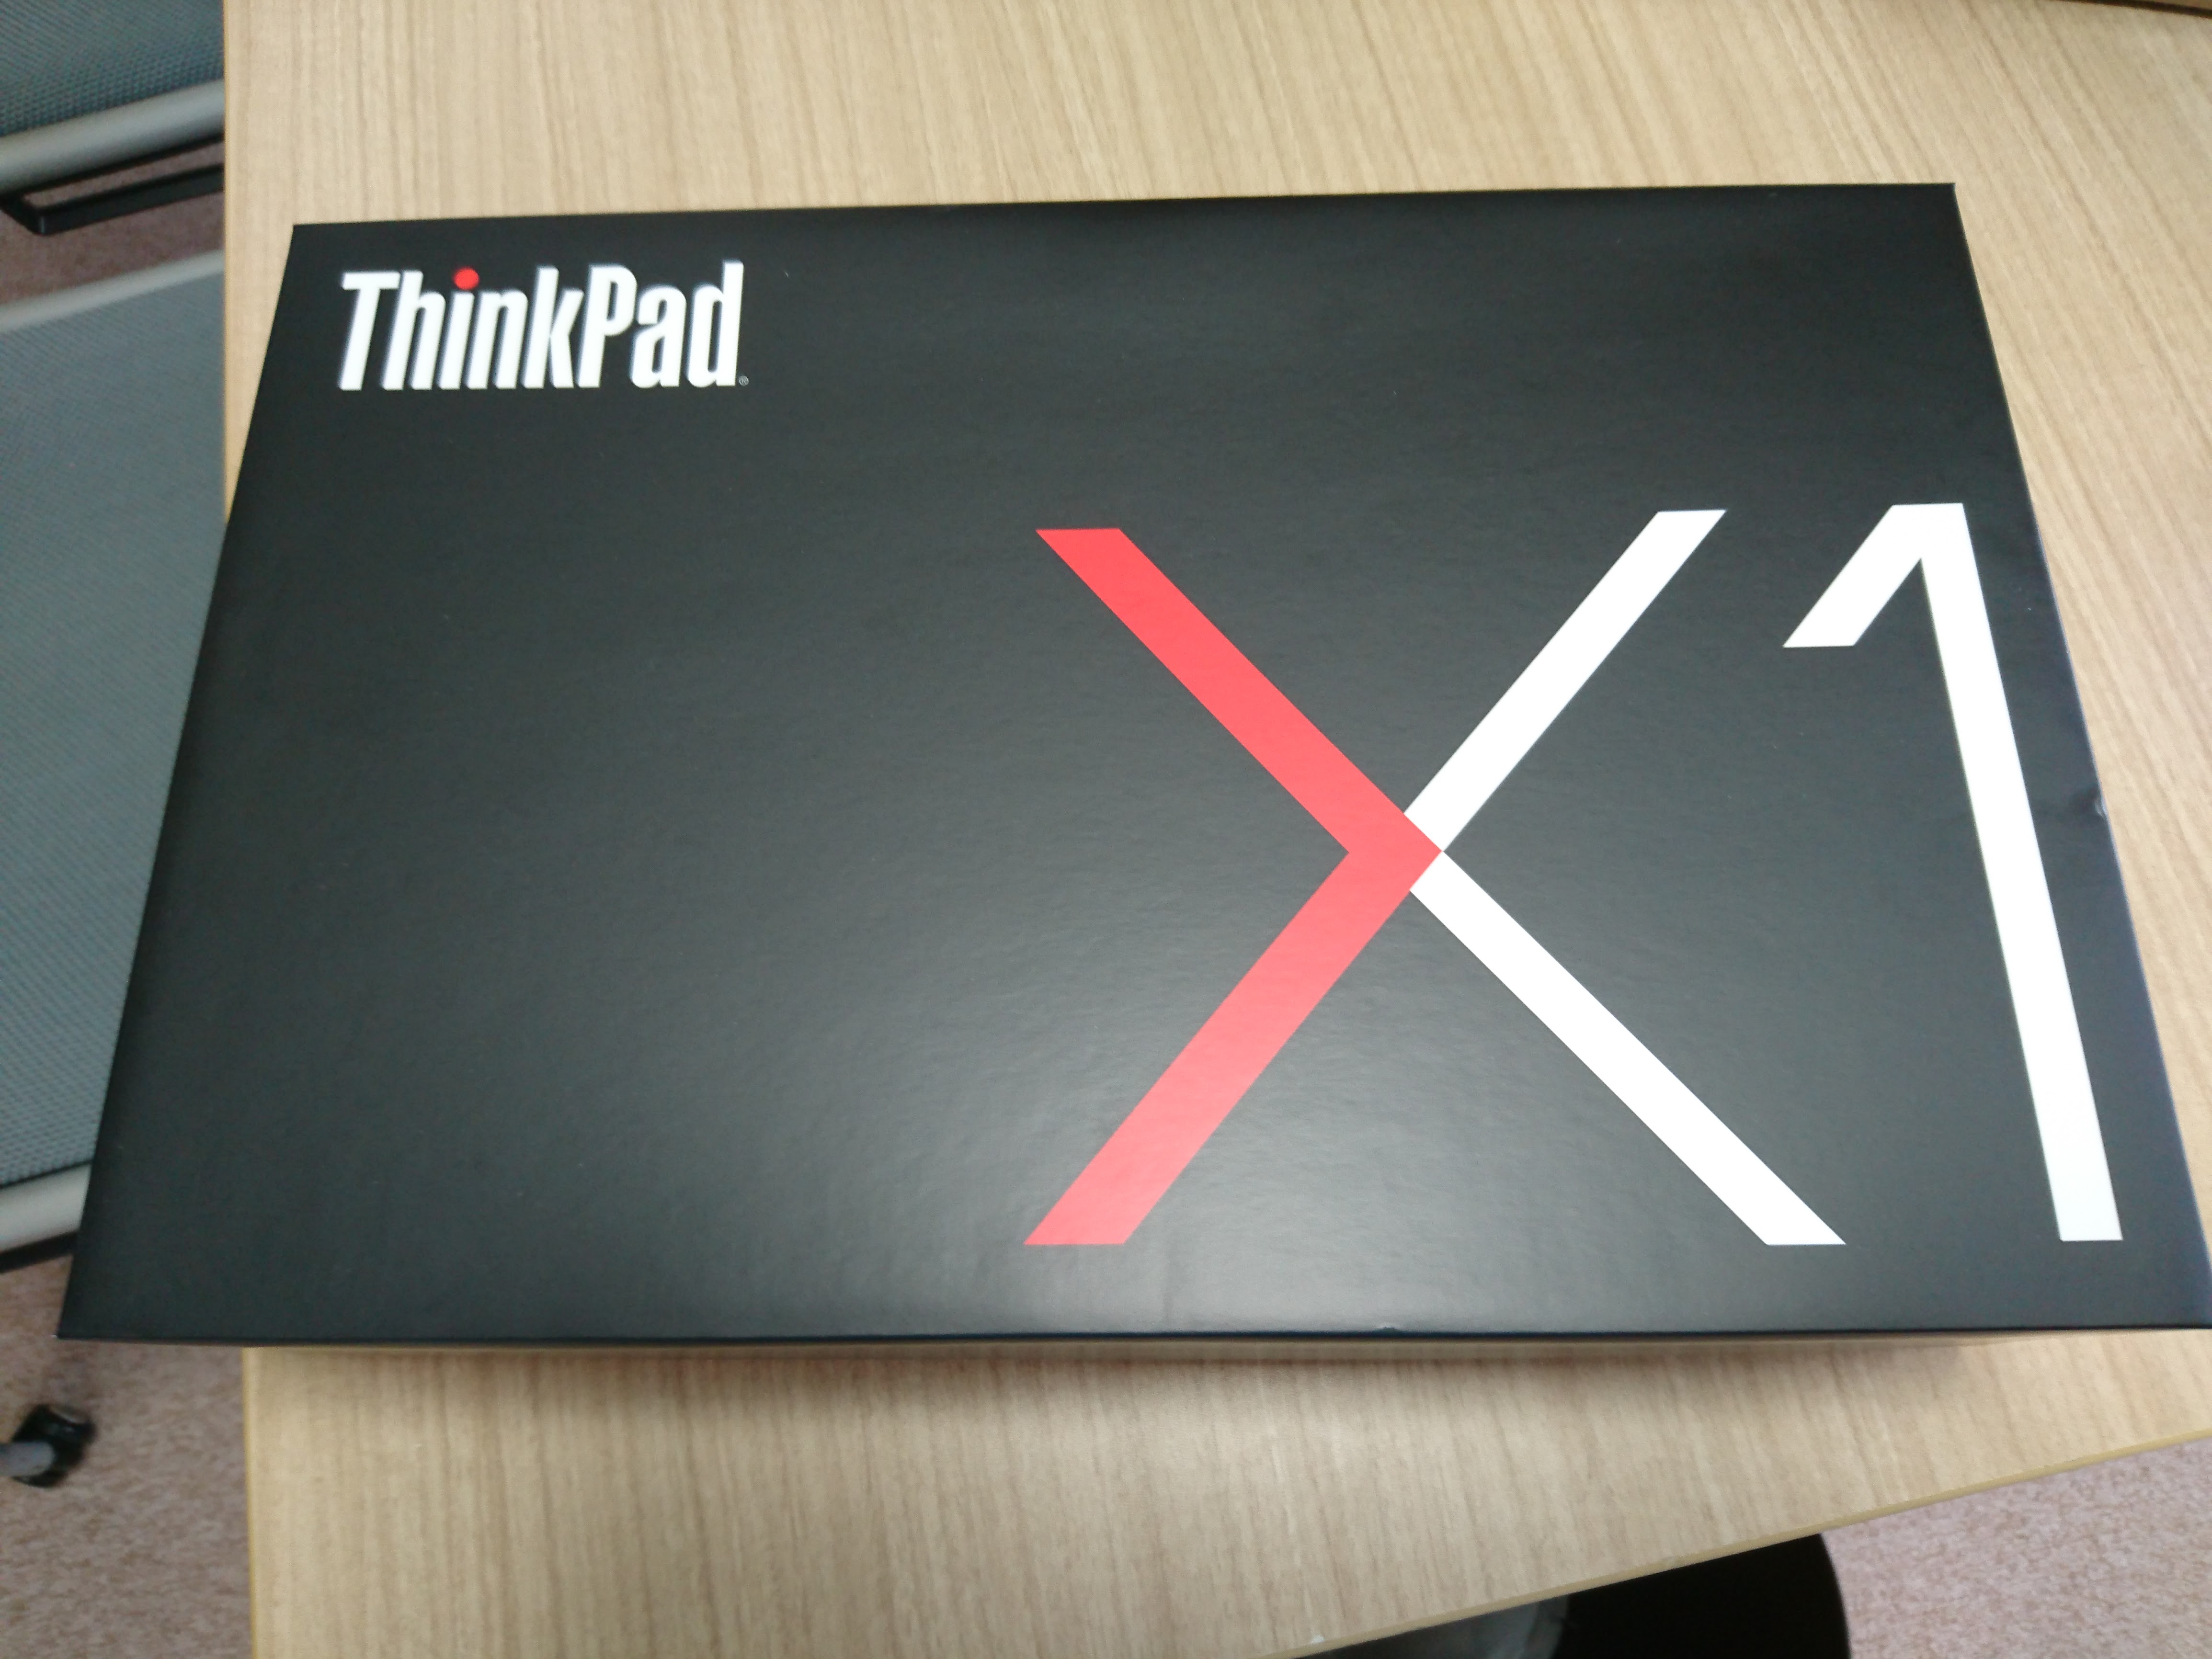 Lenovo Thinkpad X1 Carbon と USB-Cドックで、マルチディスプレイ環境構築